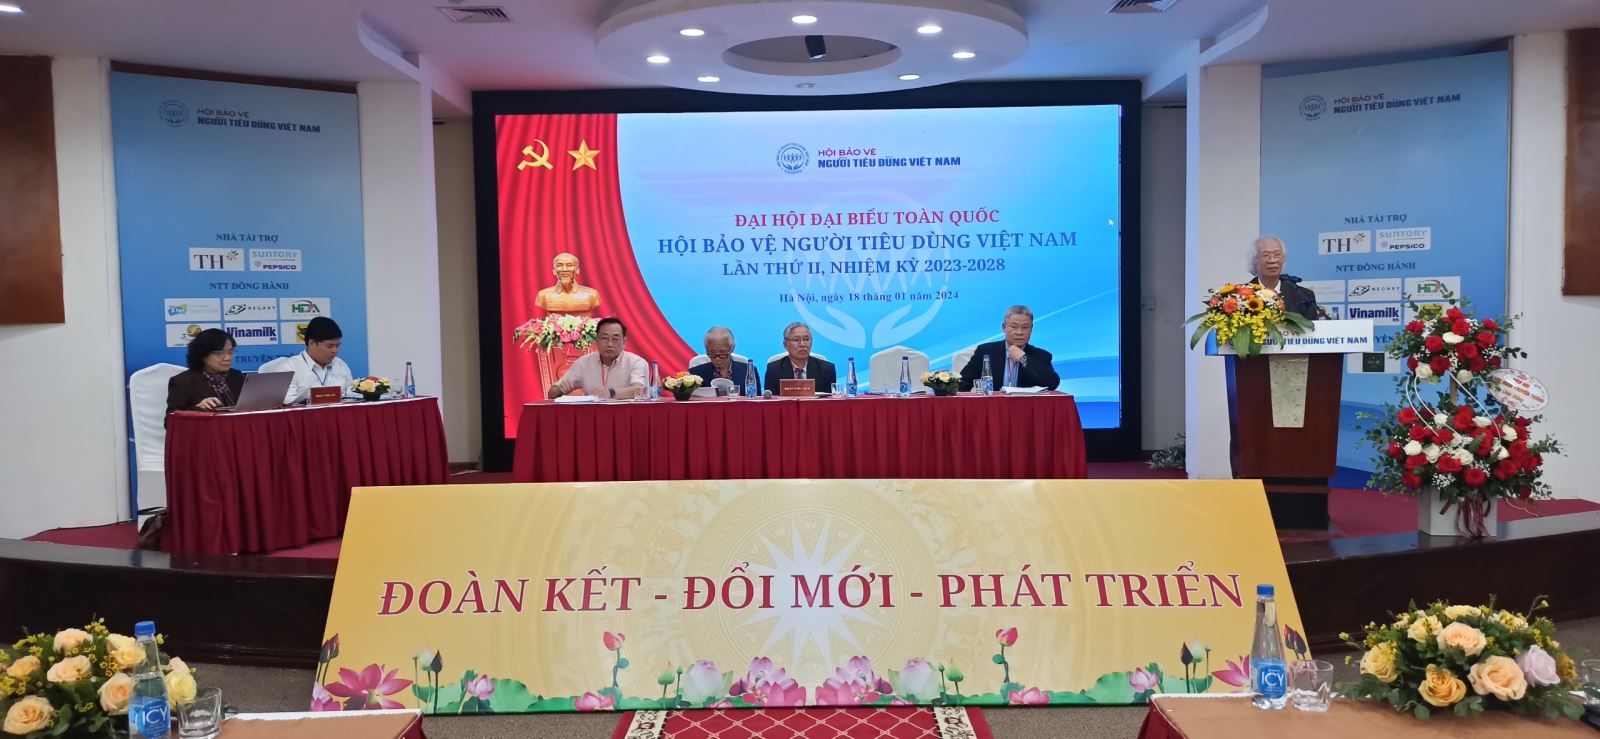 Đại hội Đại biểu toàn quốc Hội Bảo vệ người tiêu dùng Việt Nam lần II nhiệm kỳ 2023-2028